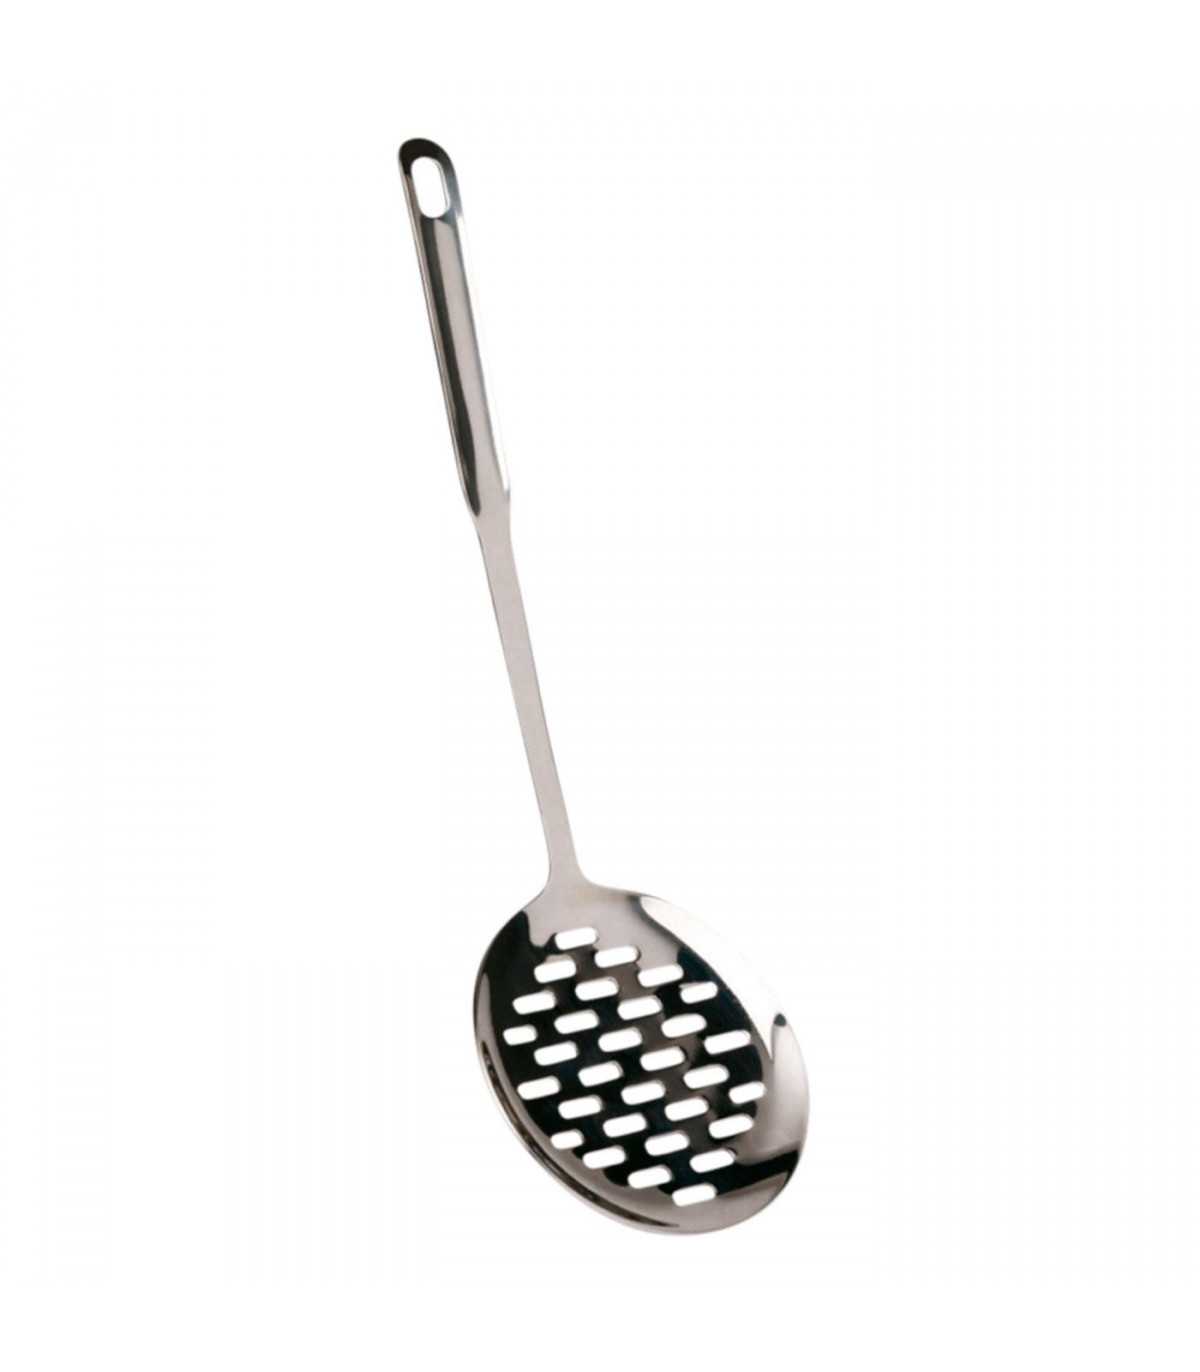 Tradineur - Espumadera de acero inoxidable, cucharón, paleta de cocina con  agujero para colgar, apta para lavavajillas, 12 x 45